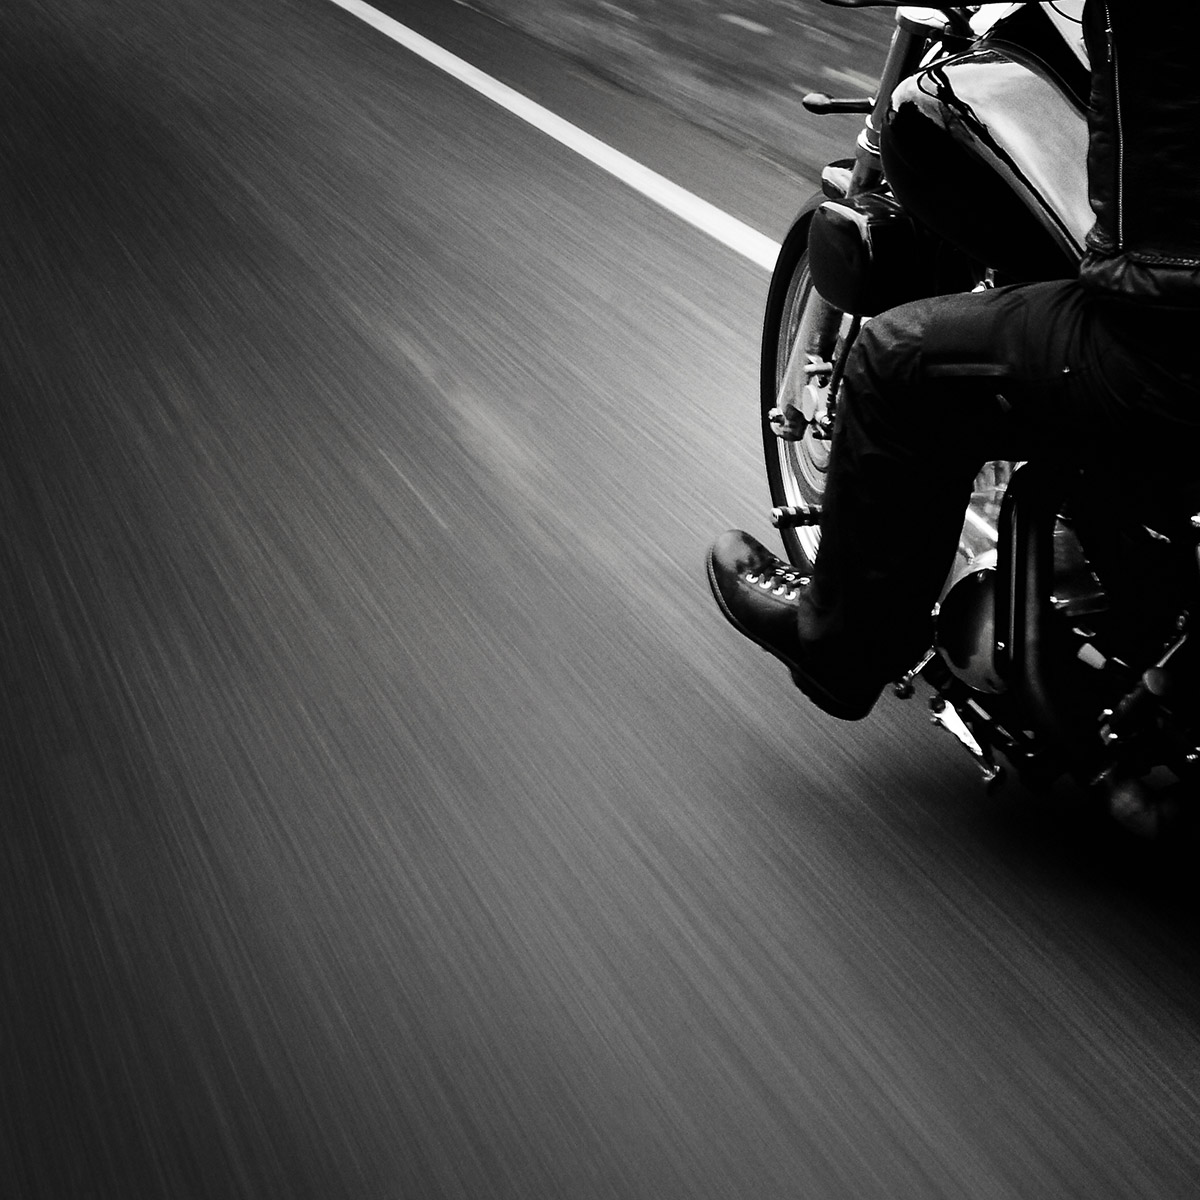 Motorrad fahrend in schwarz weiß